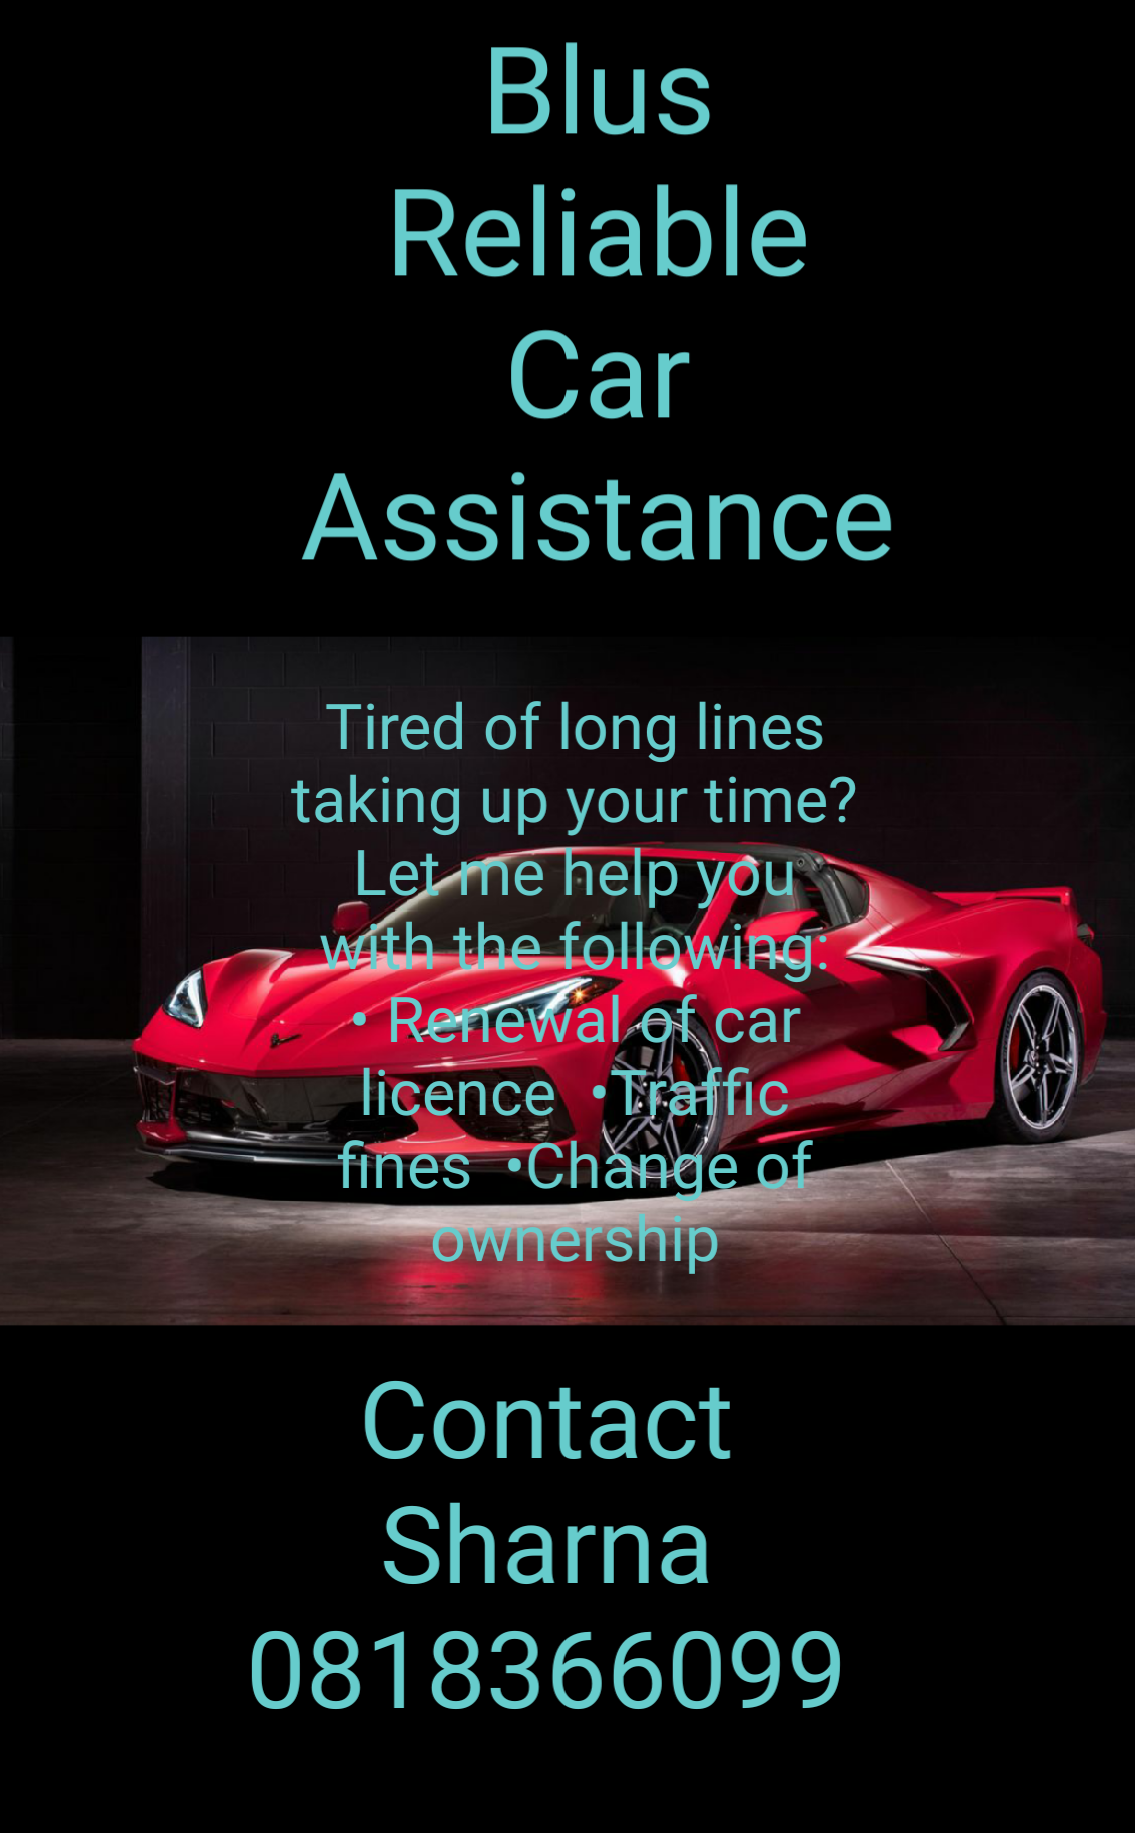 Blus Reliable Car Assistance 